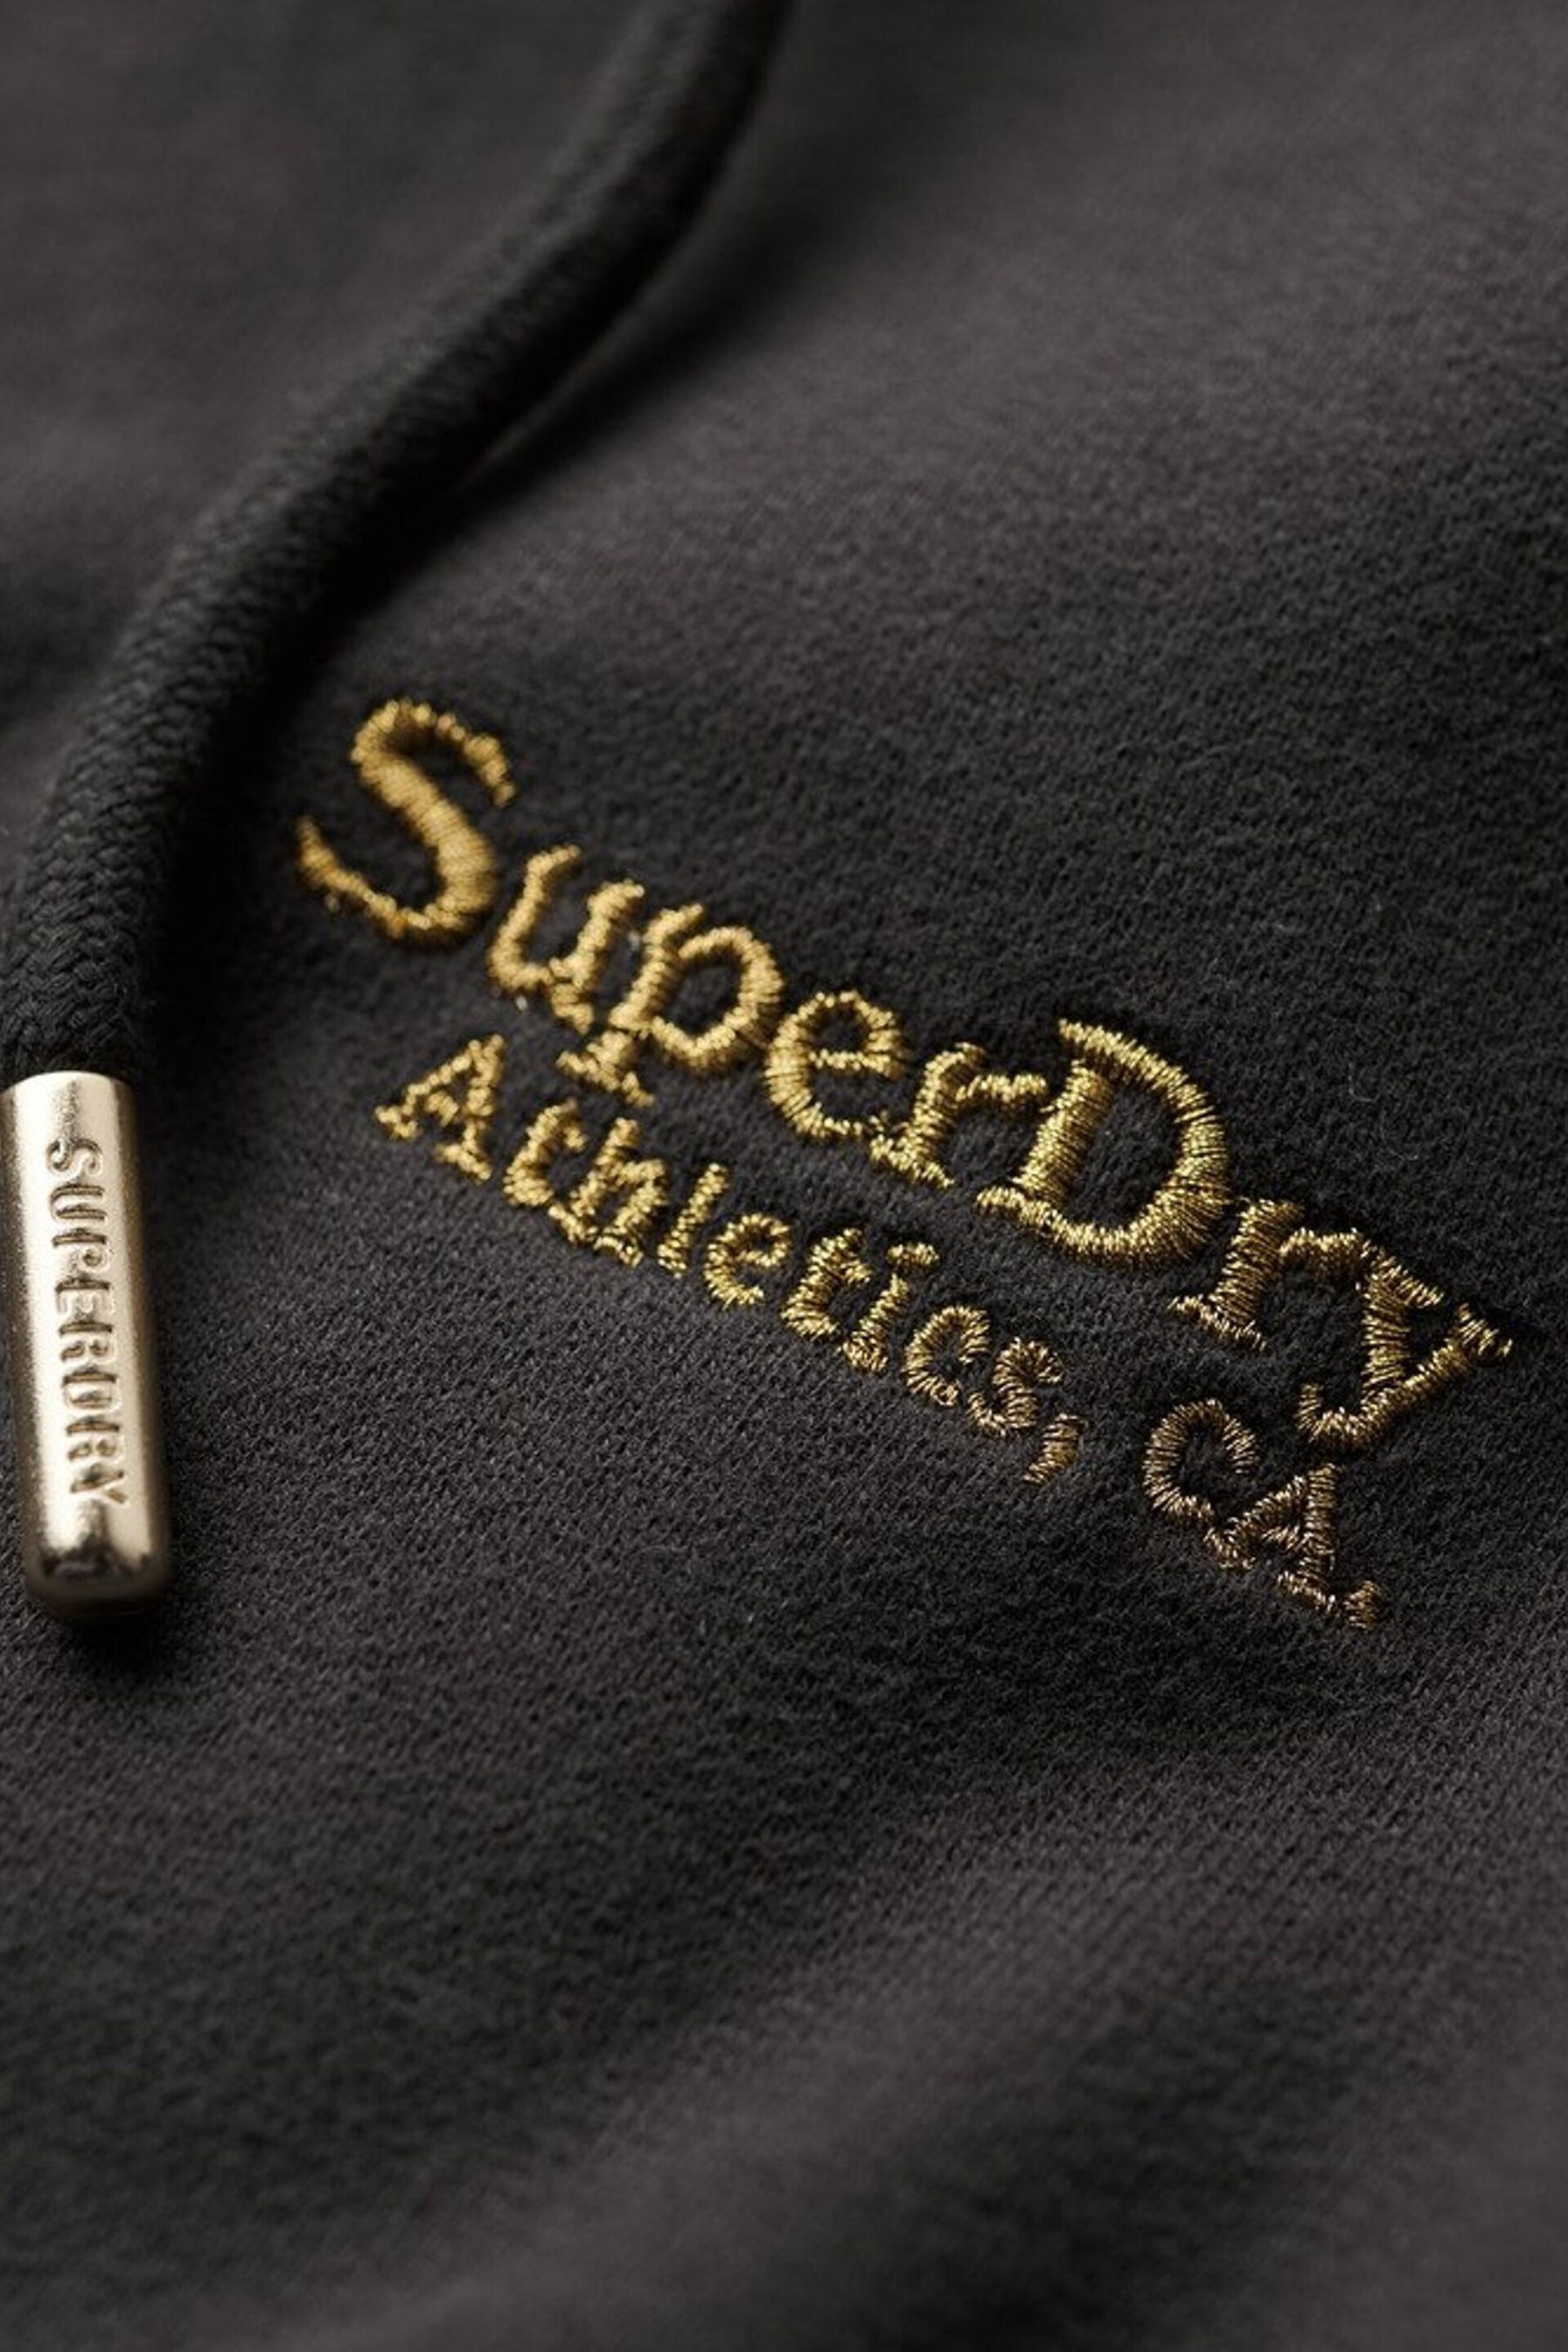 Superdry Black Essential Logo Zip Hoodie - Image 5 of 5